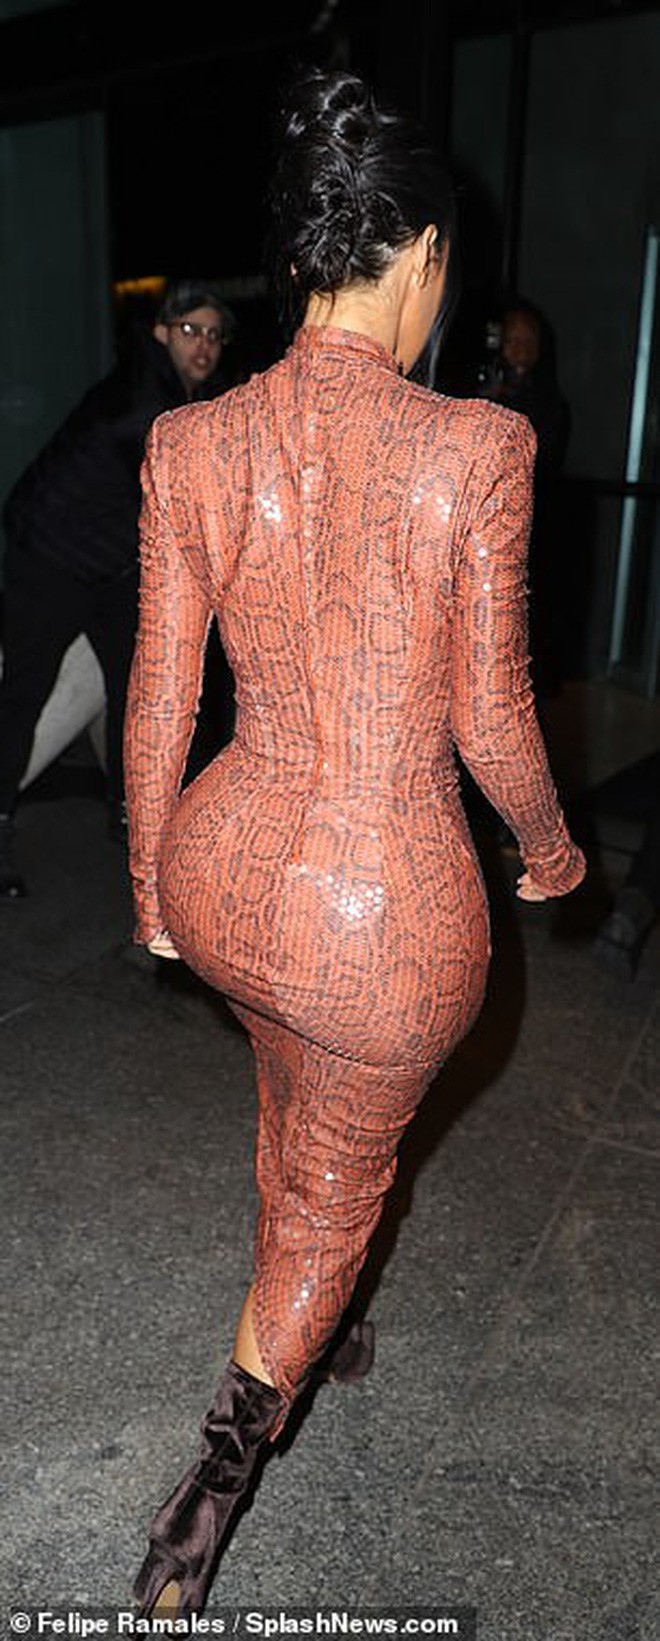 Kim Kardashian xuất hiện vô cùng xinh đẹp, nhưng lớp váy căng ra vì siêu vòng 3 của cô mới gây chú ý nhất - Ảnh 2.